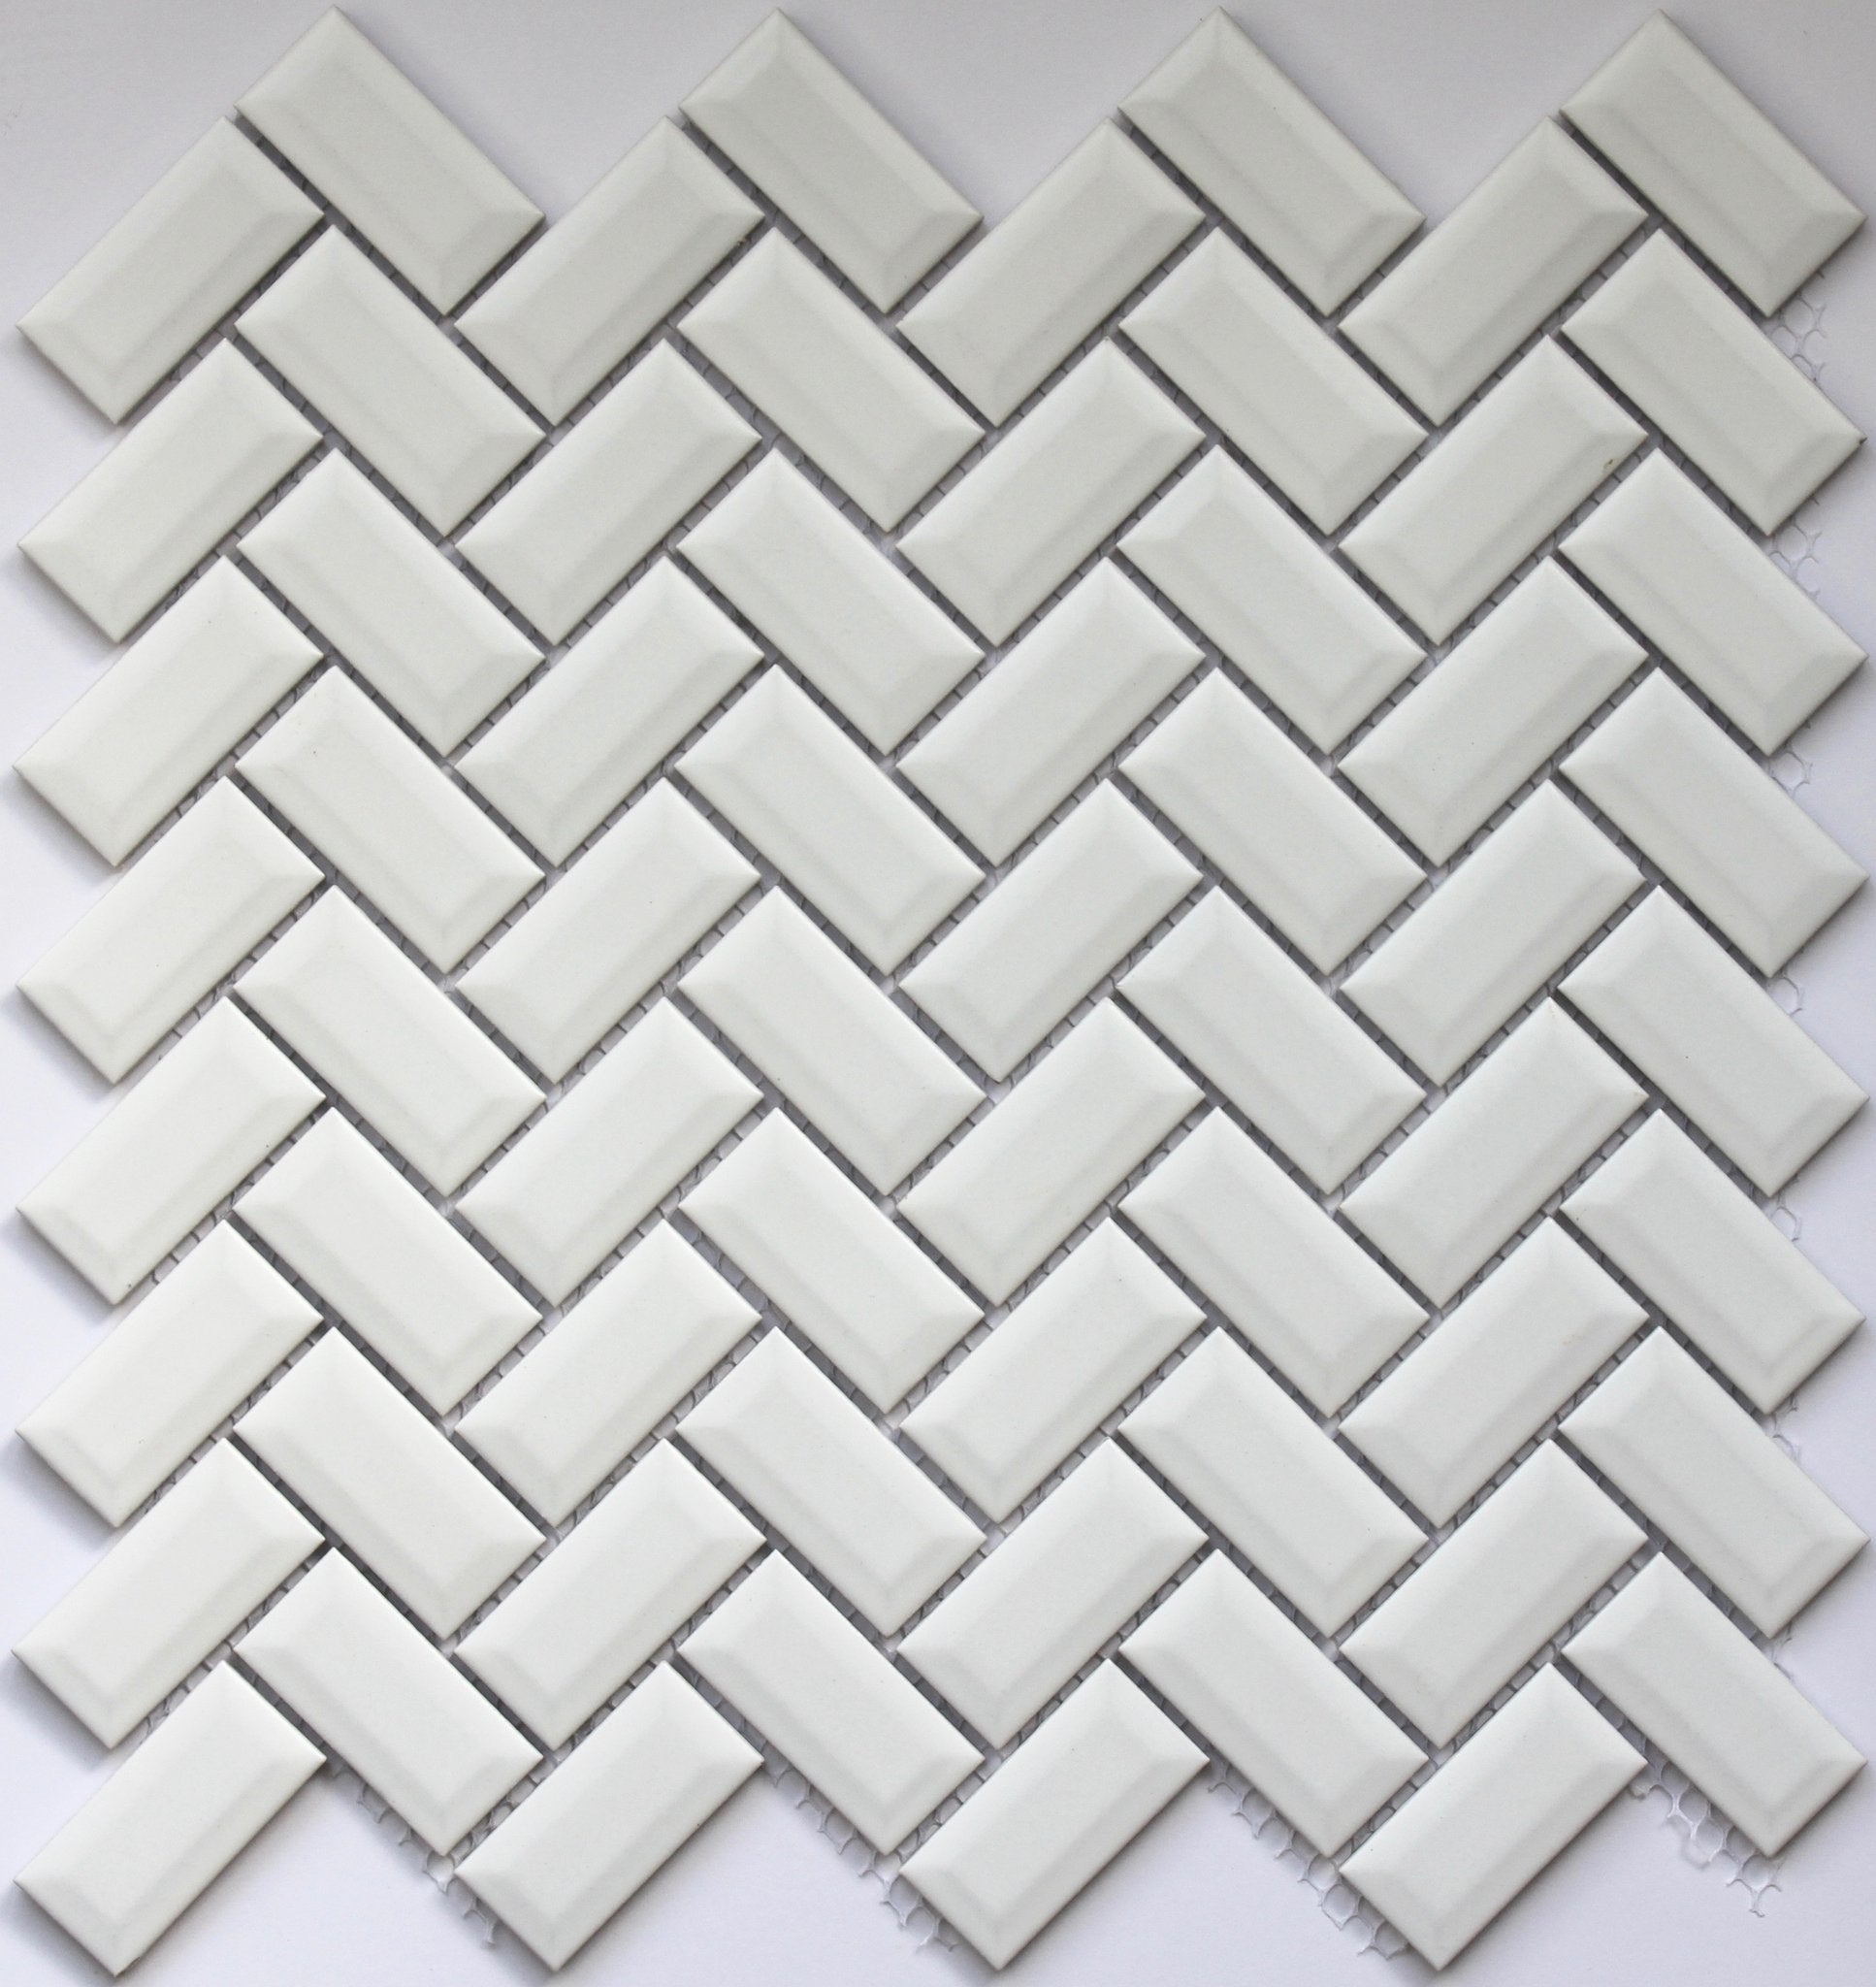 Matt White Bevelled Herringbone Mosaic Tile 23x48mm